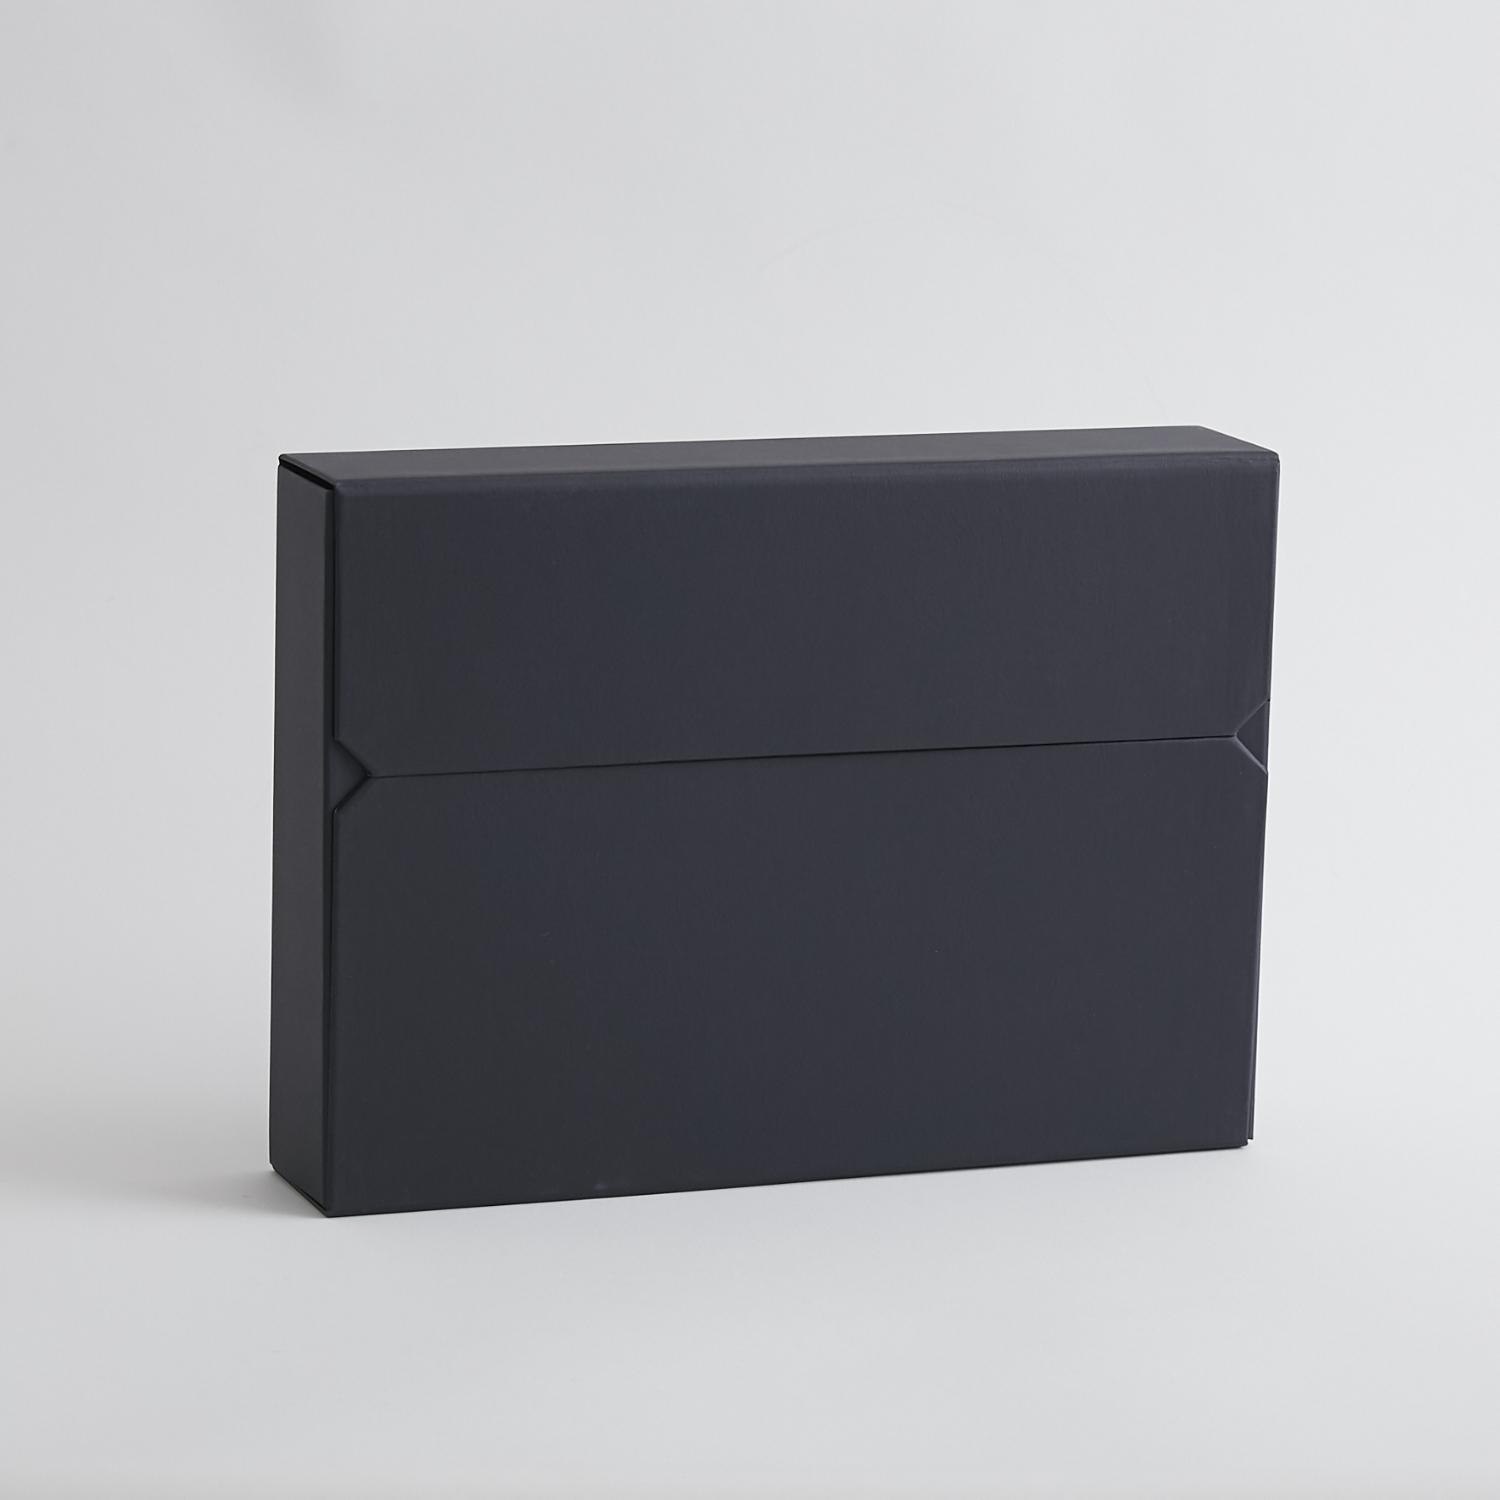 デスクの上をすっきり整頓 両開きドキュメントケース ISSHINDO 商舗 PRODUCTS 60mm ブラック ドキュメントケース プレゼント クロス貼タイプ